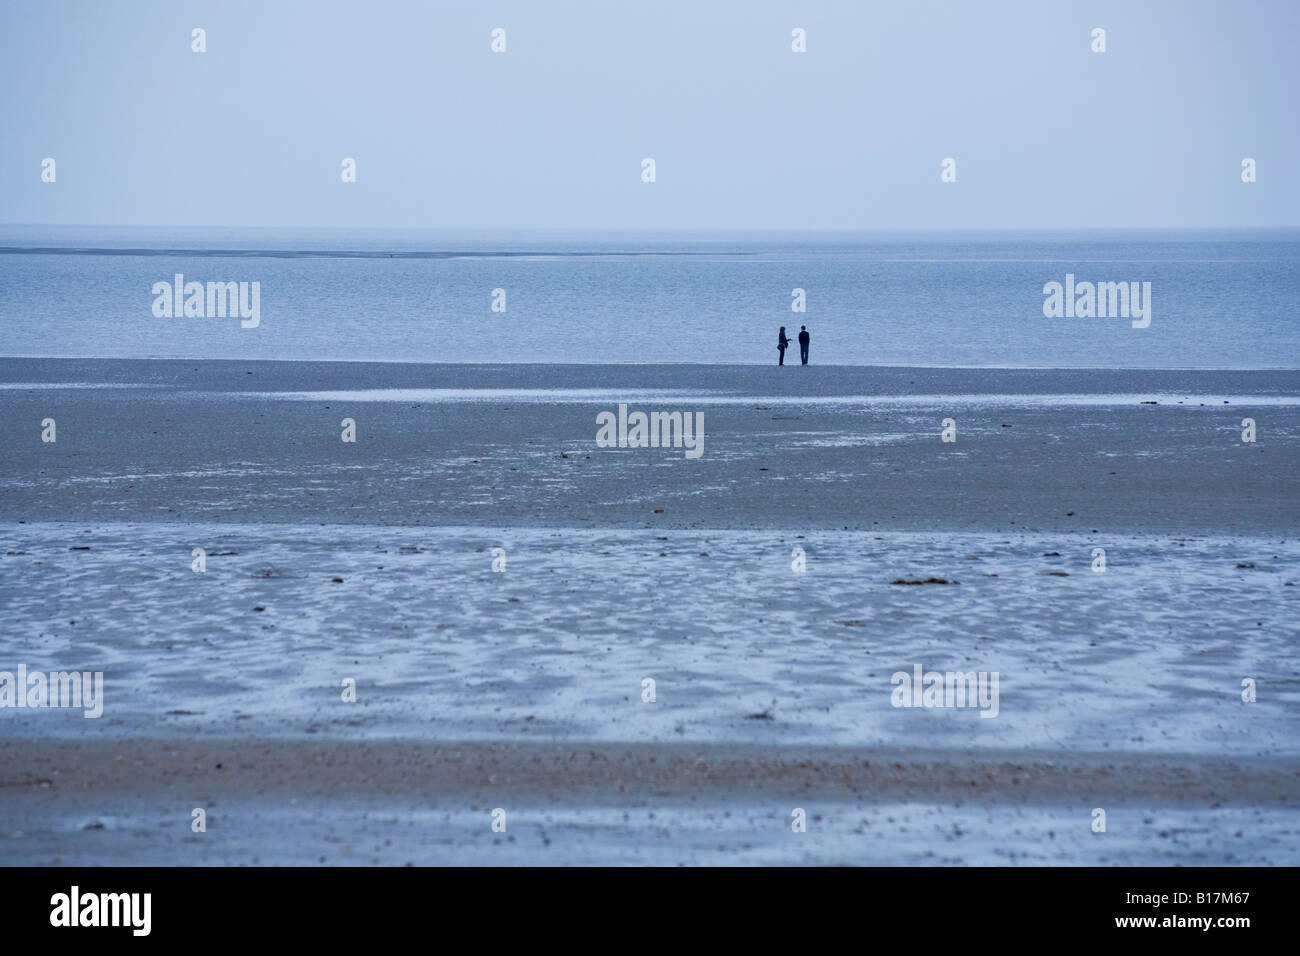 Ein paar Silhouette am Strand bei Ebbe. Monoton, kühles Blau. Allgemein Stockfoto